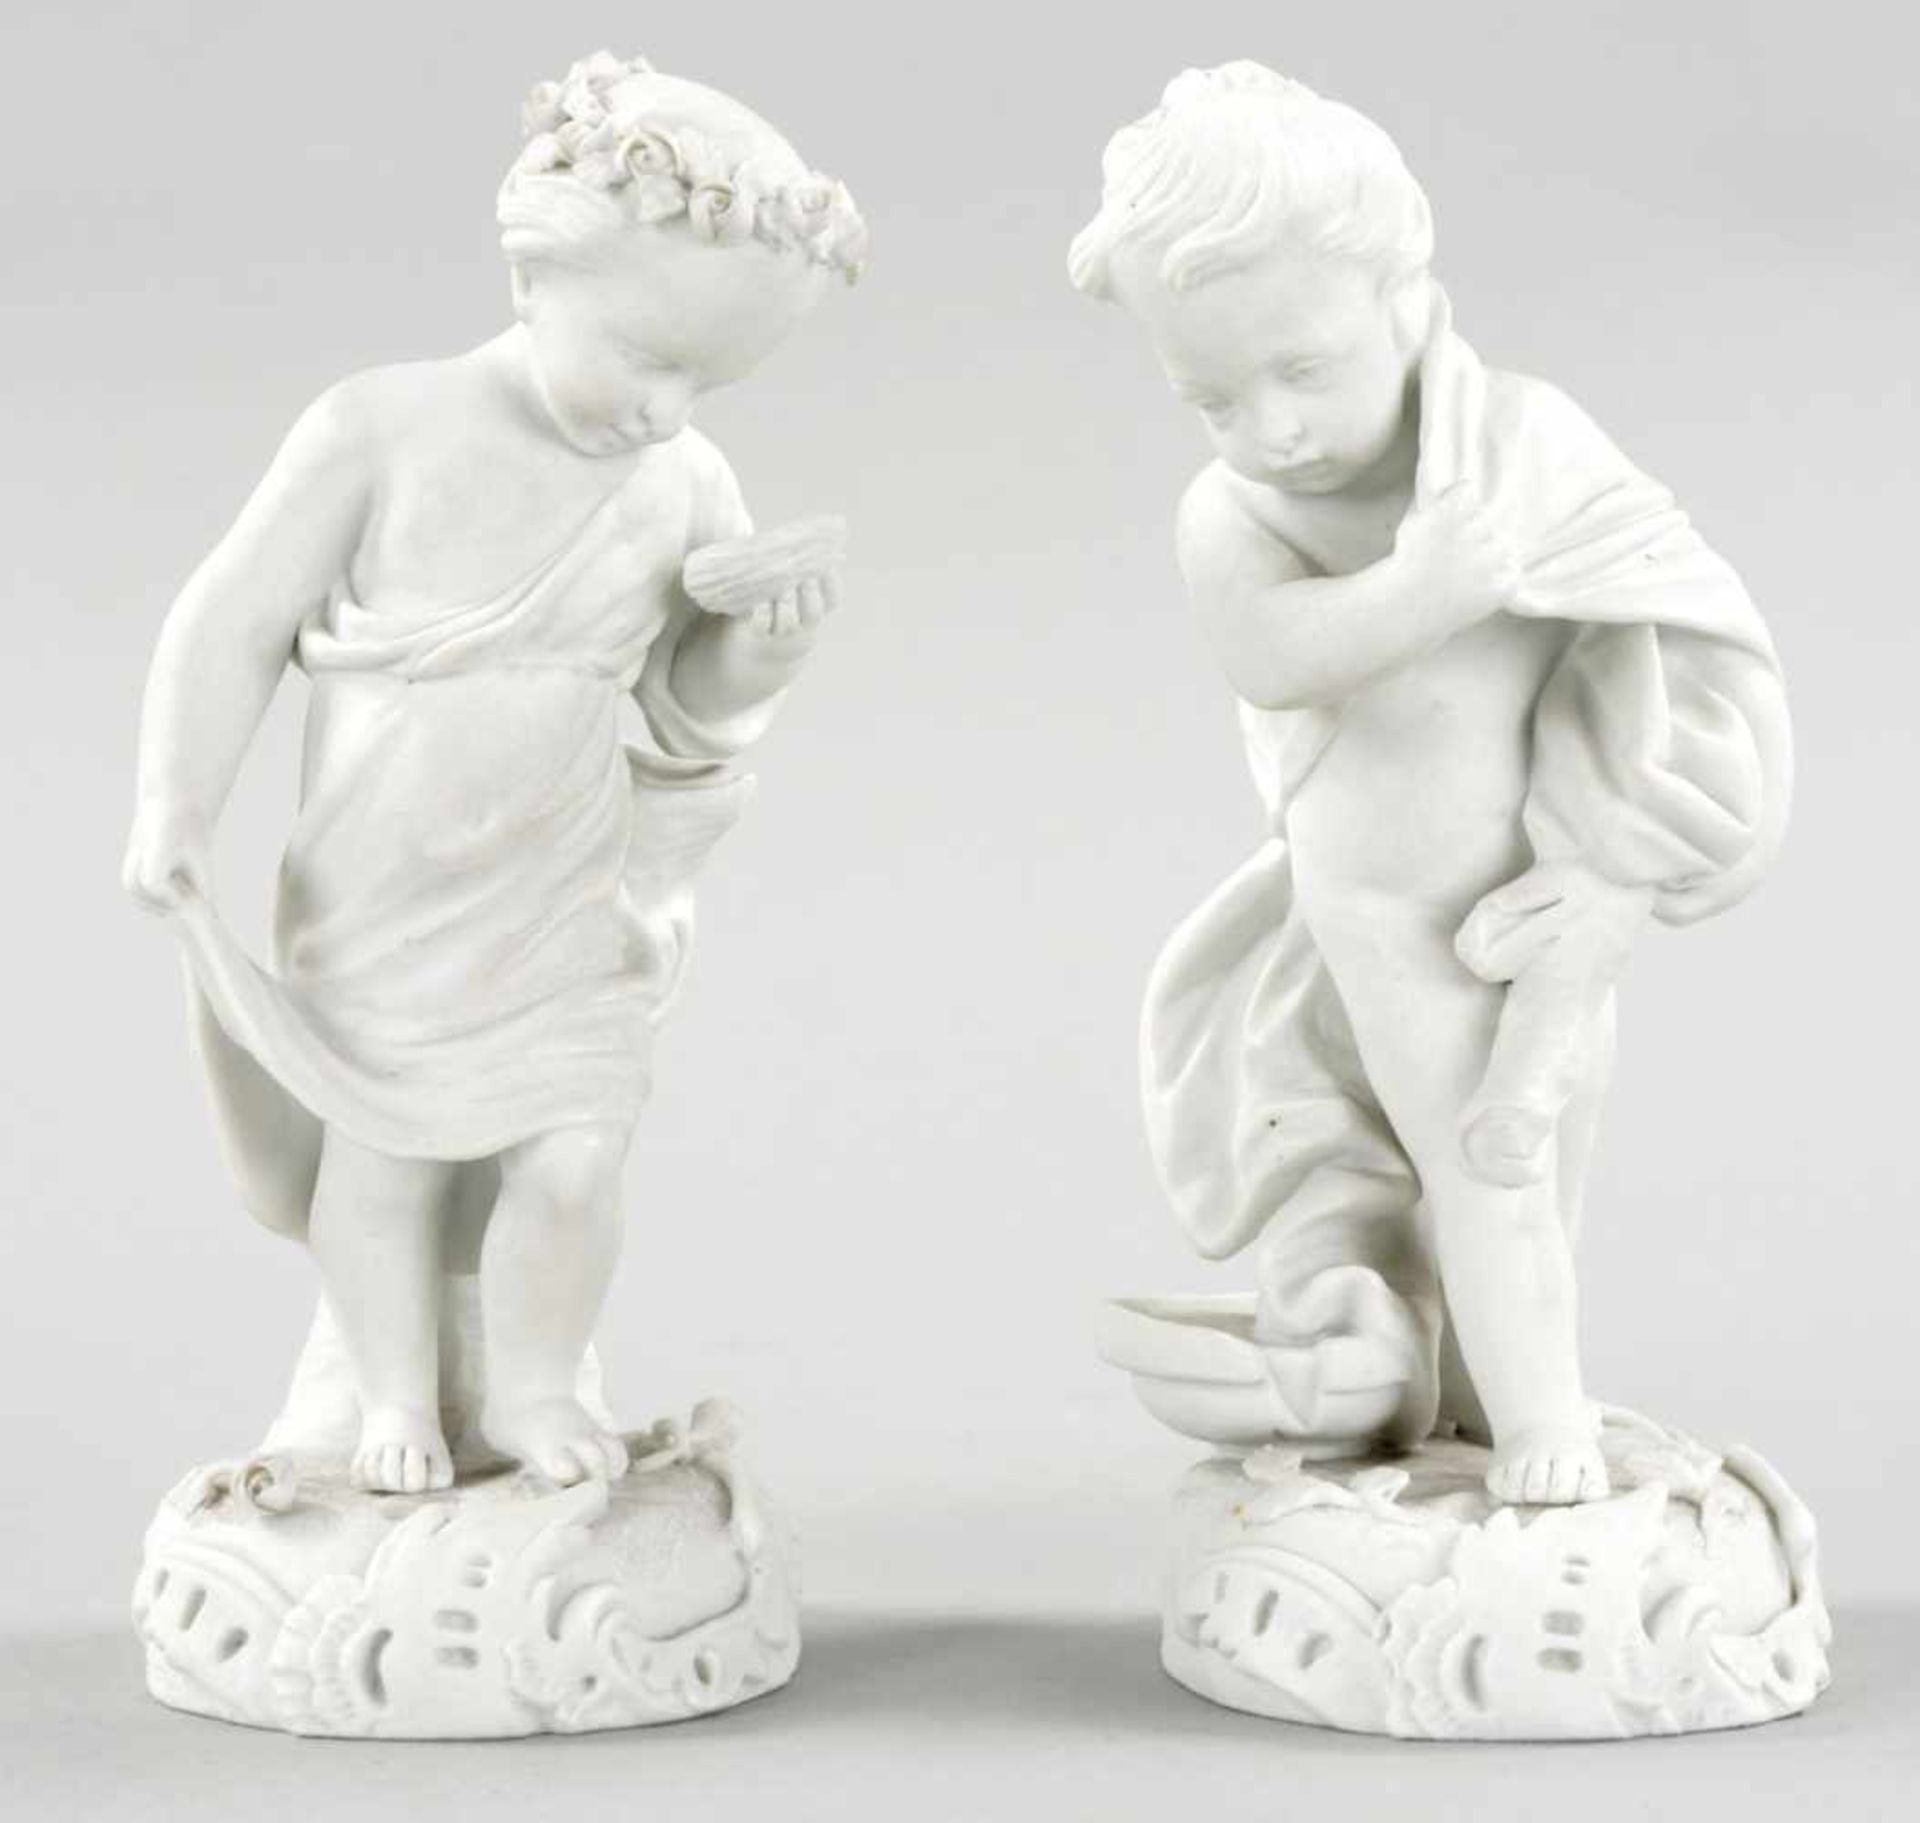 Paar KinderfigurenBiskuitporzellan, Frankreich, 19./20.Jh. Im Stile v. Sèvres.- In der Manier d. 18.